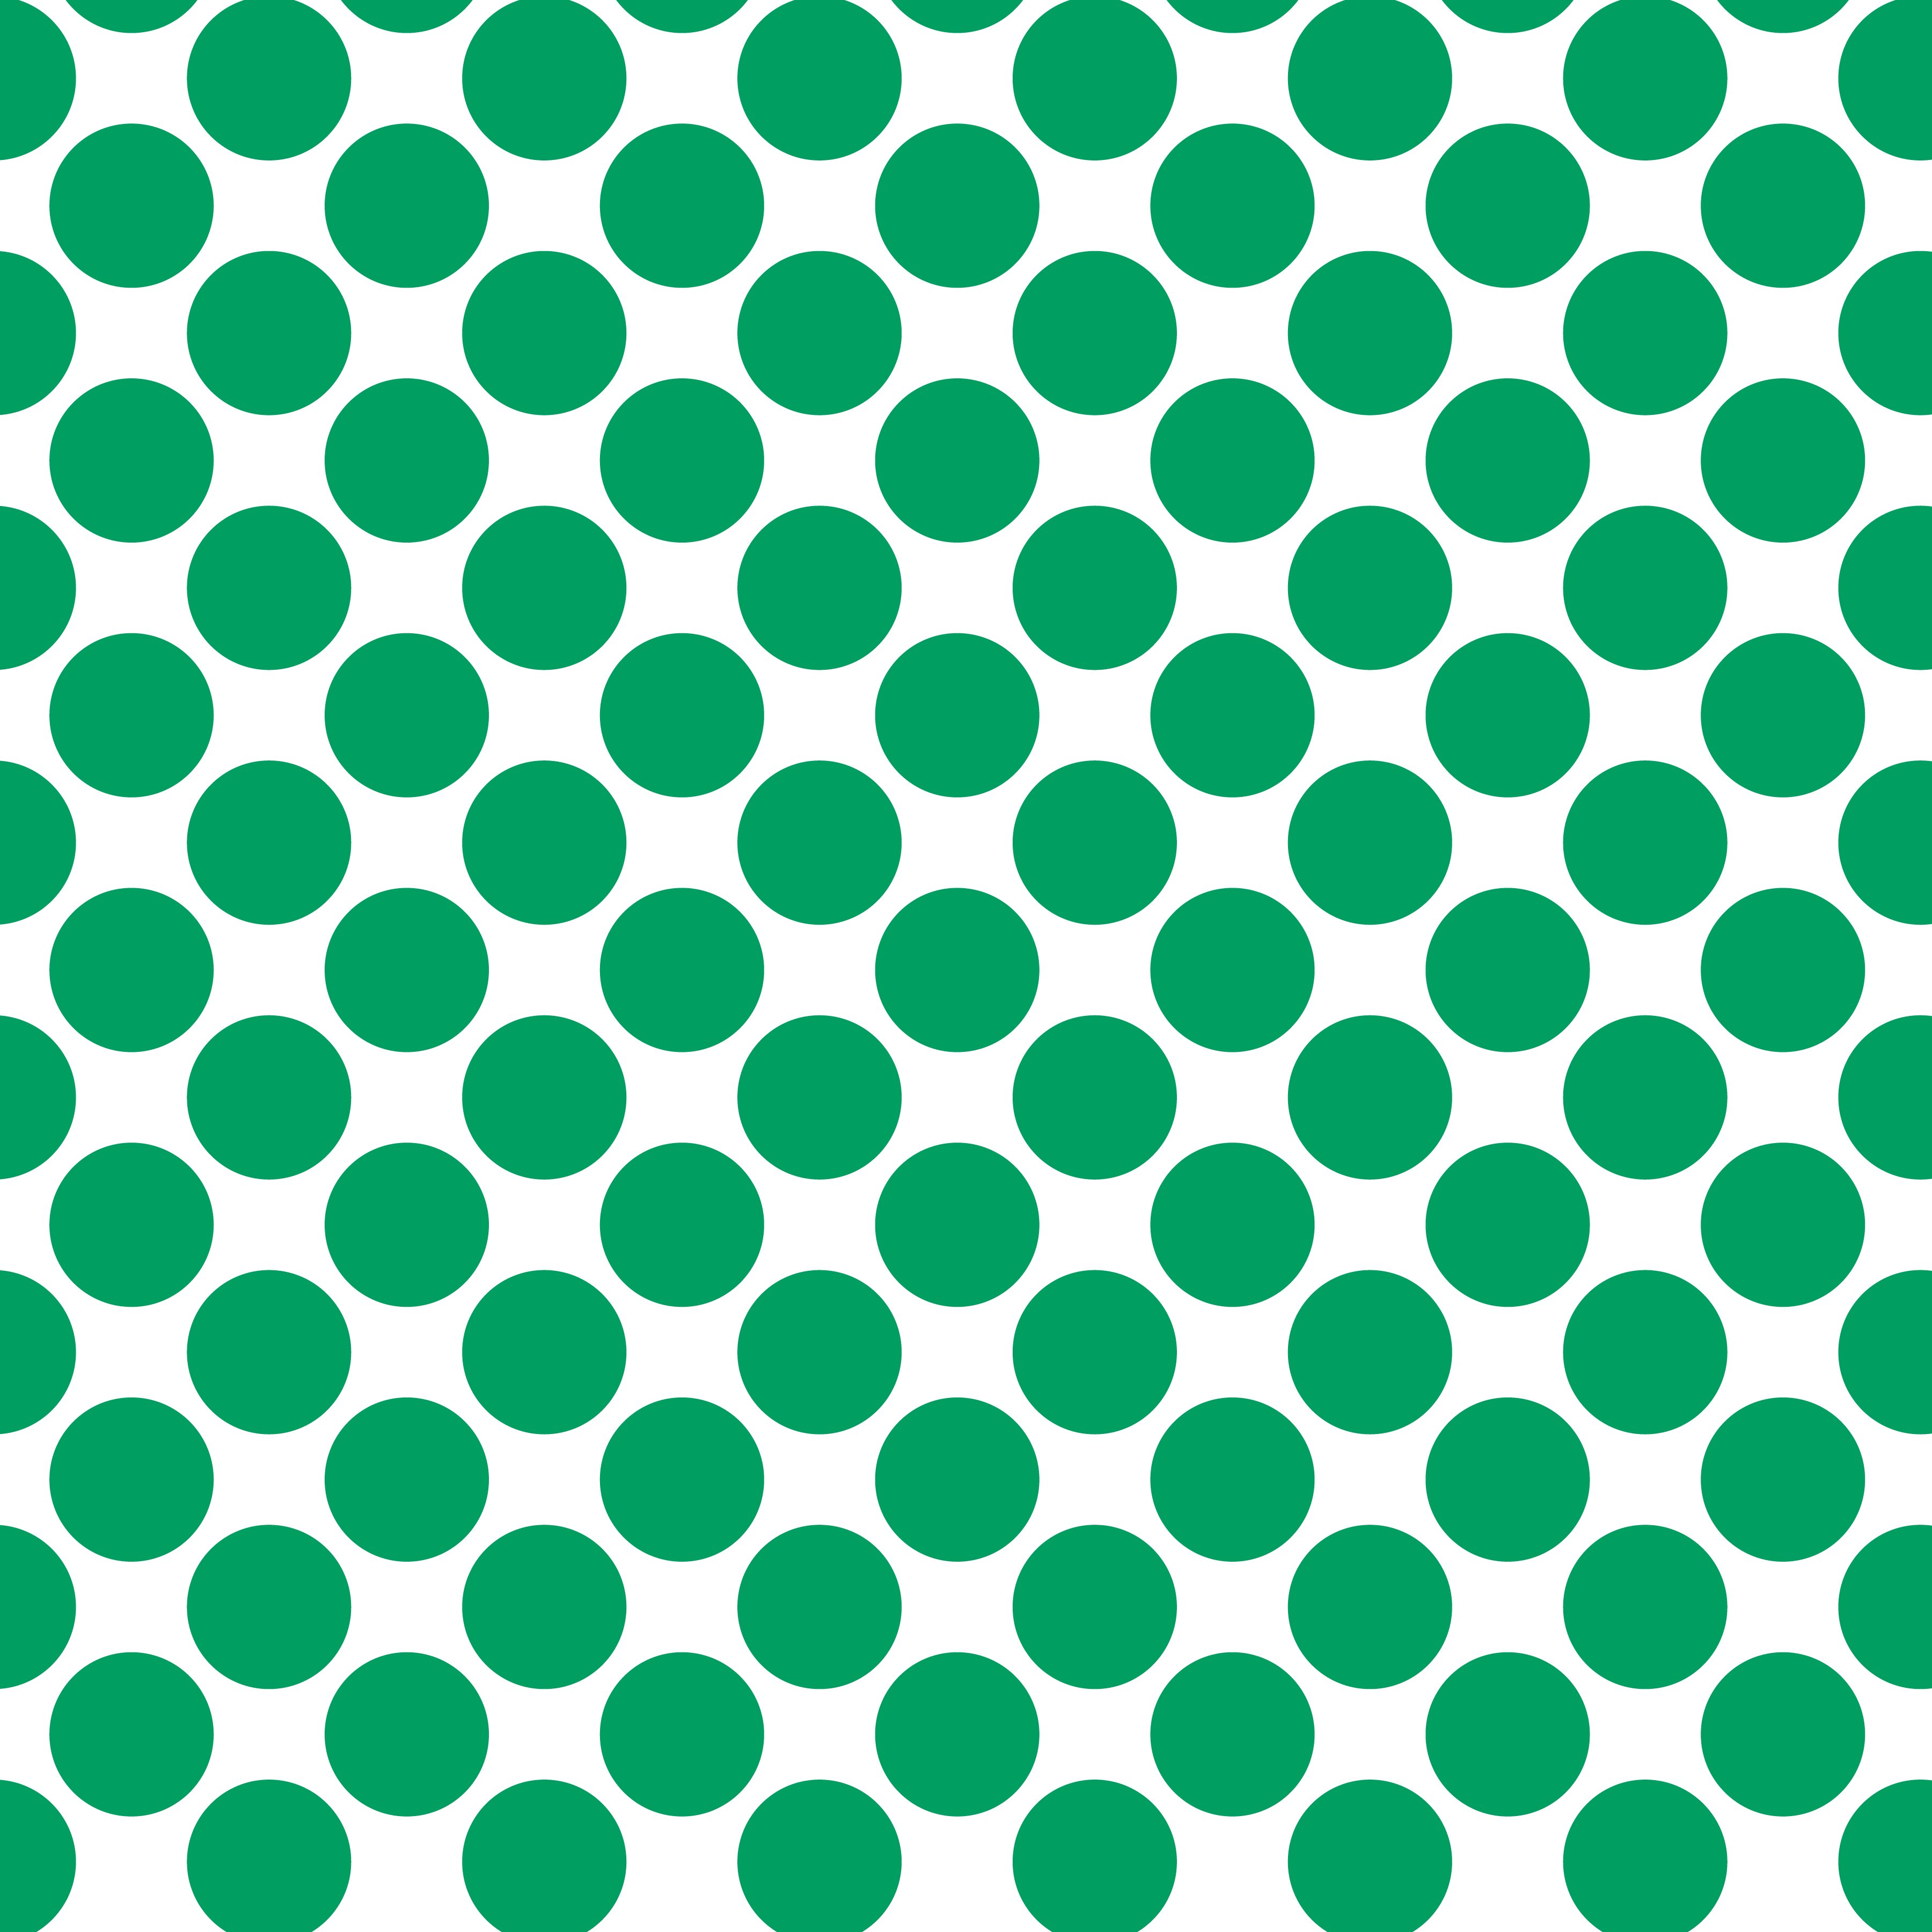 Polka Dot 1 cm Beyaz - Deniz Yeşili Puantiye Dekoratif Baskı Kumaş